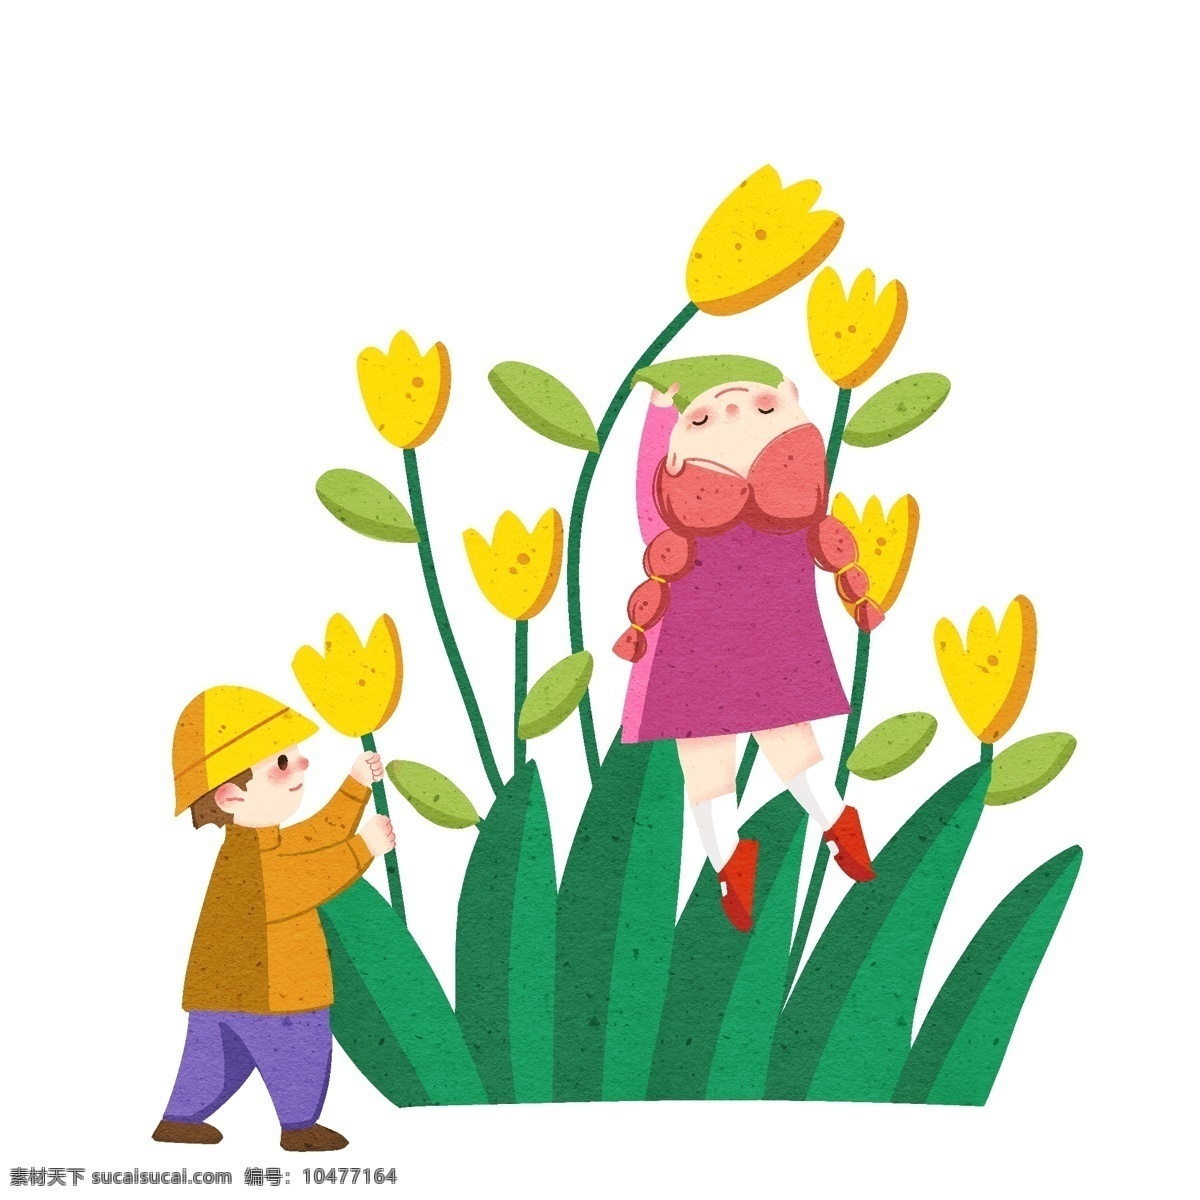 手绘 踏青 花朵 插画 黄色的花朵 高兴的孩子 漂亮的花朵 卡通插画 手绘踏青插画 踏青郊游插画